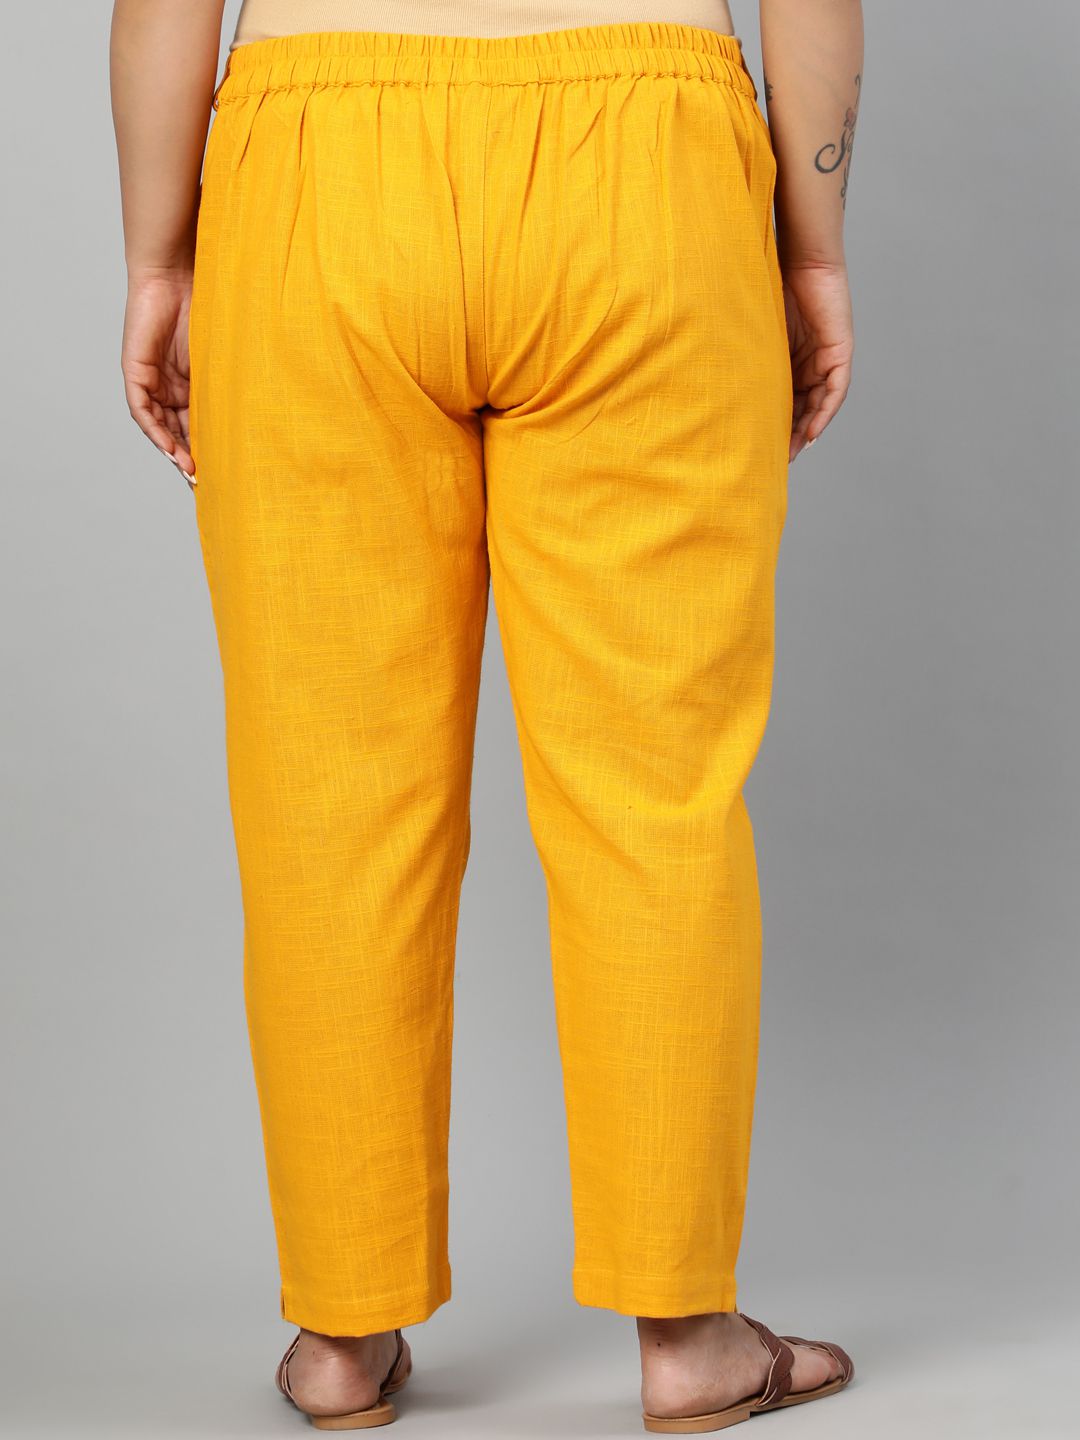 Shop Simple Pants for Women